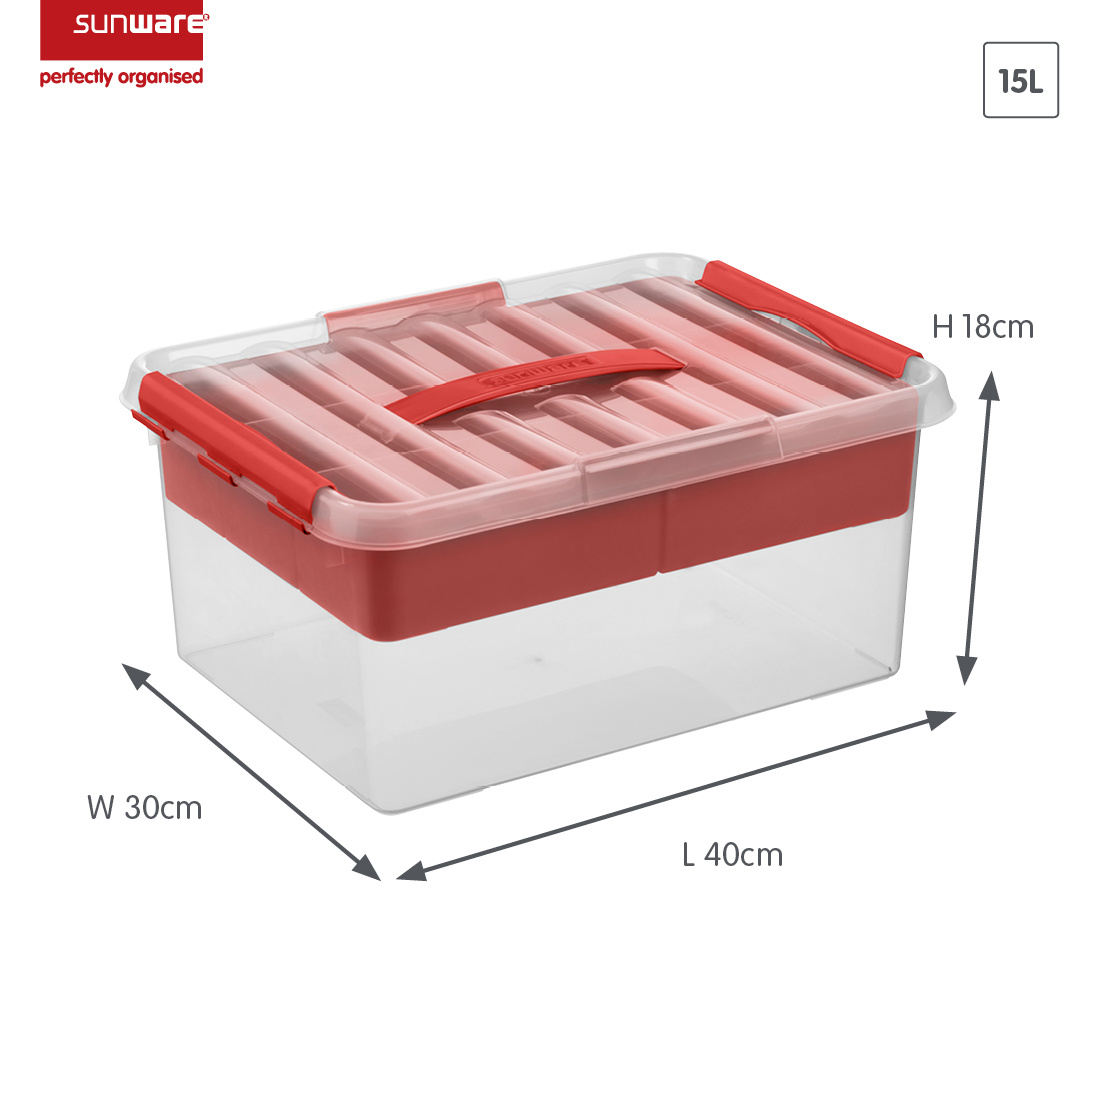 Q-line boîte de rangement avec insert 15L transparent rouge